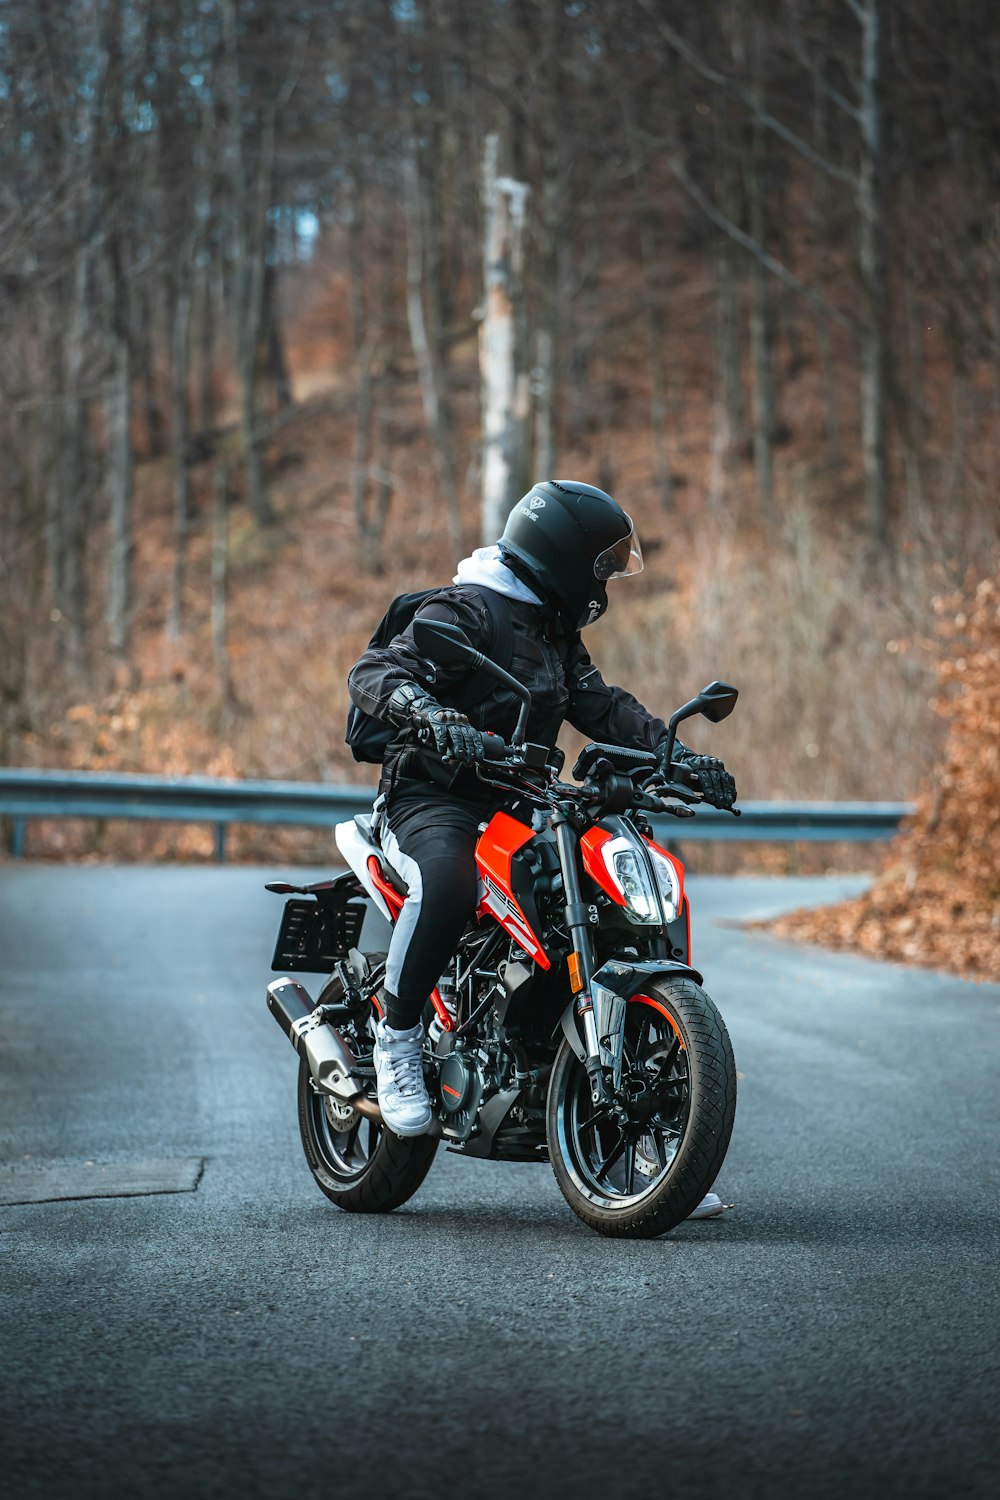 homme en veste noire conduisant une moto orange et noire sur la route pendant la journée